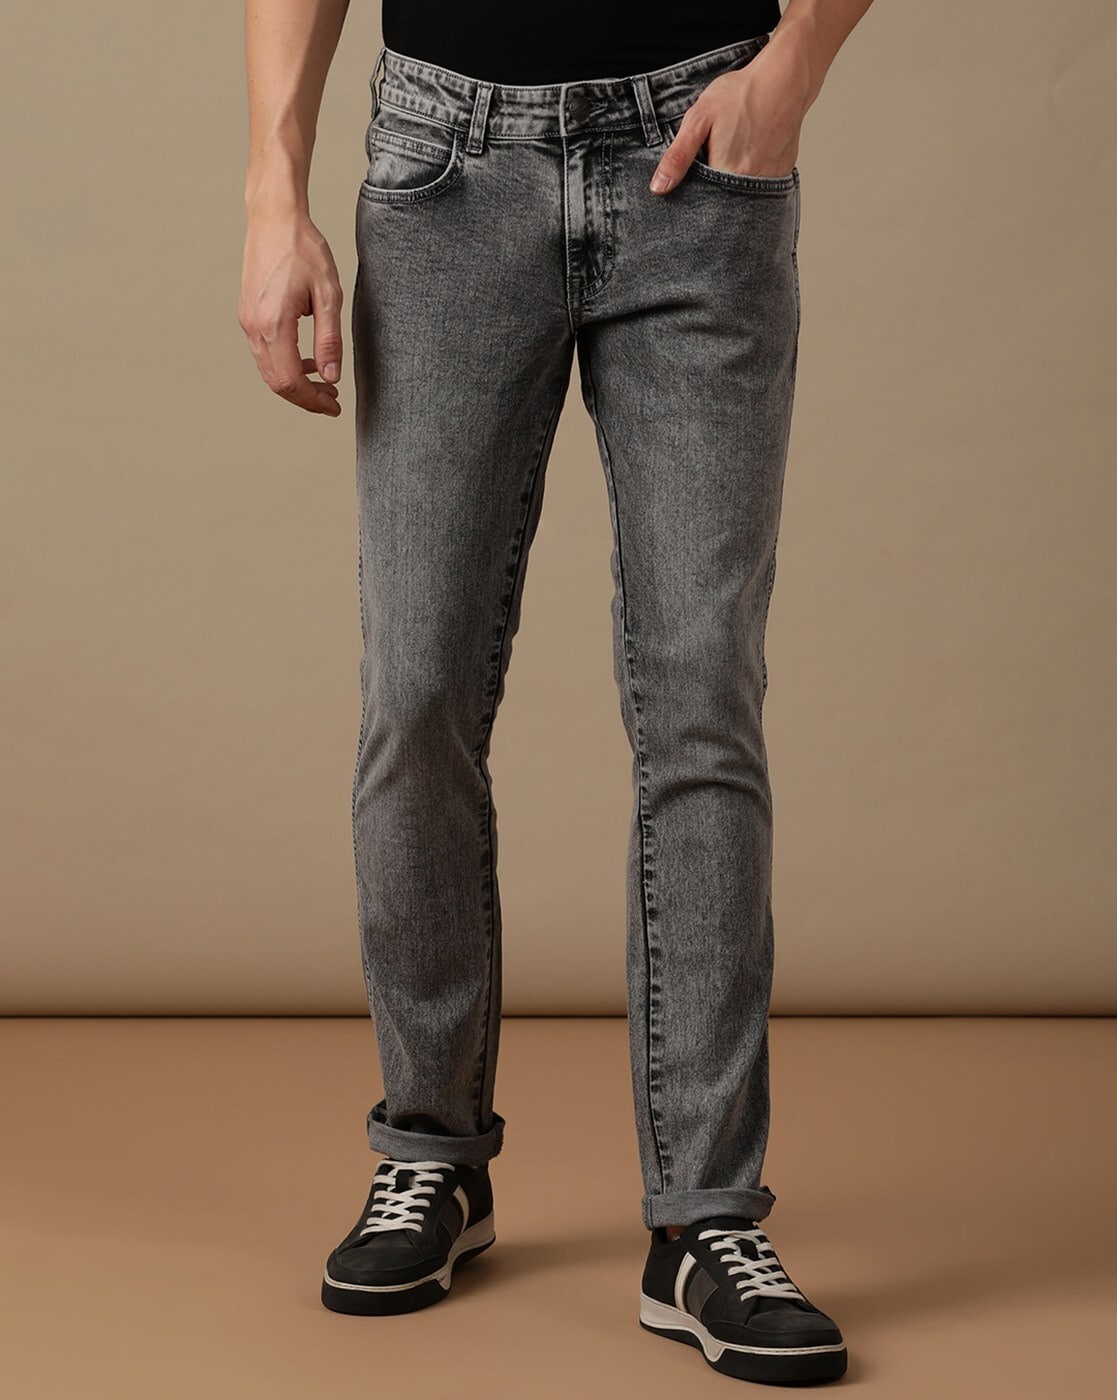 Buy Jeans by Wrangler Online | Ajio.com